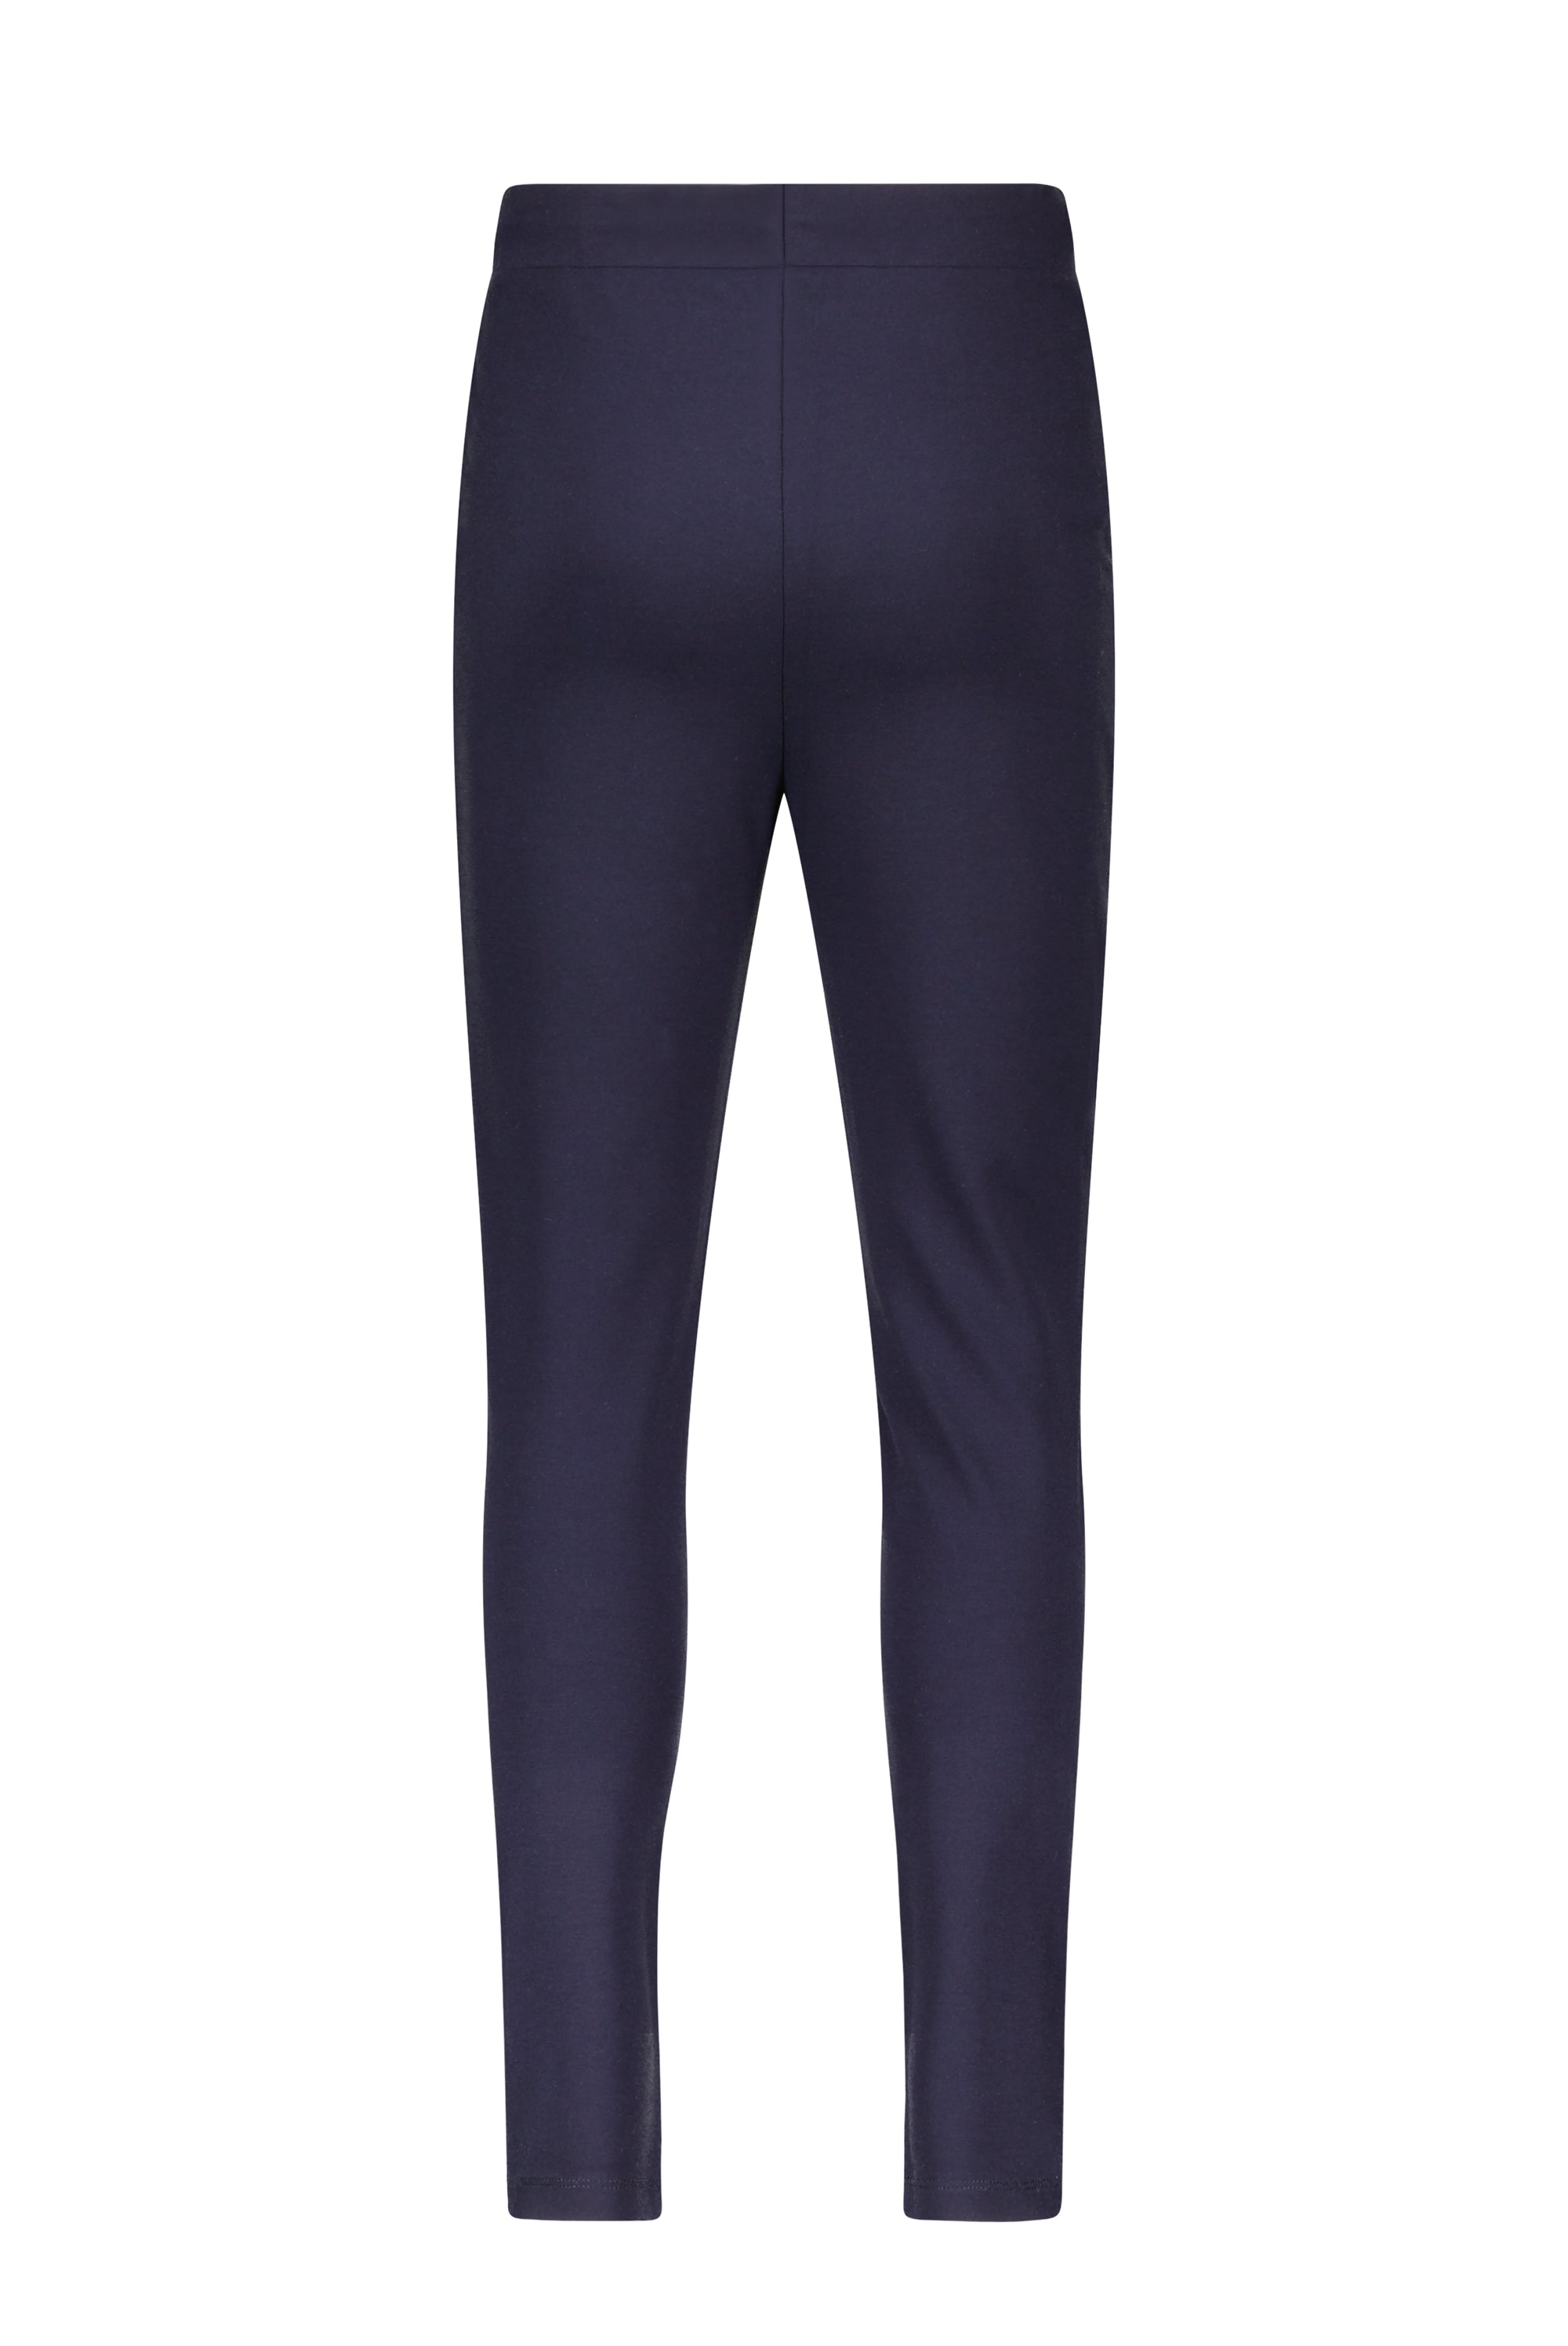 Meisjes Suna interlock solid pants van NoBell in de kleur Navy Blazer in maat 170-176.